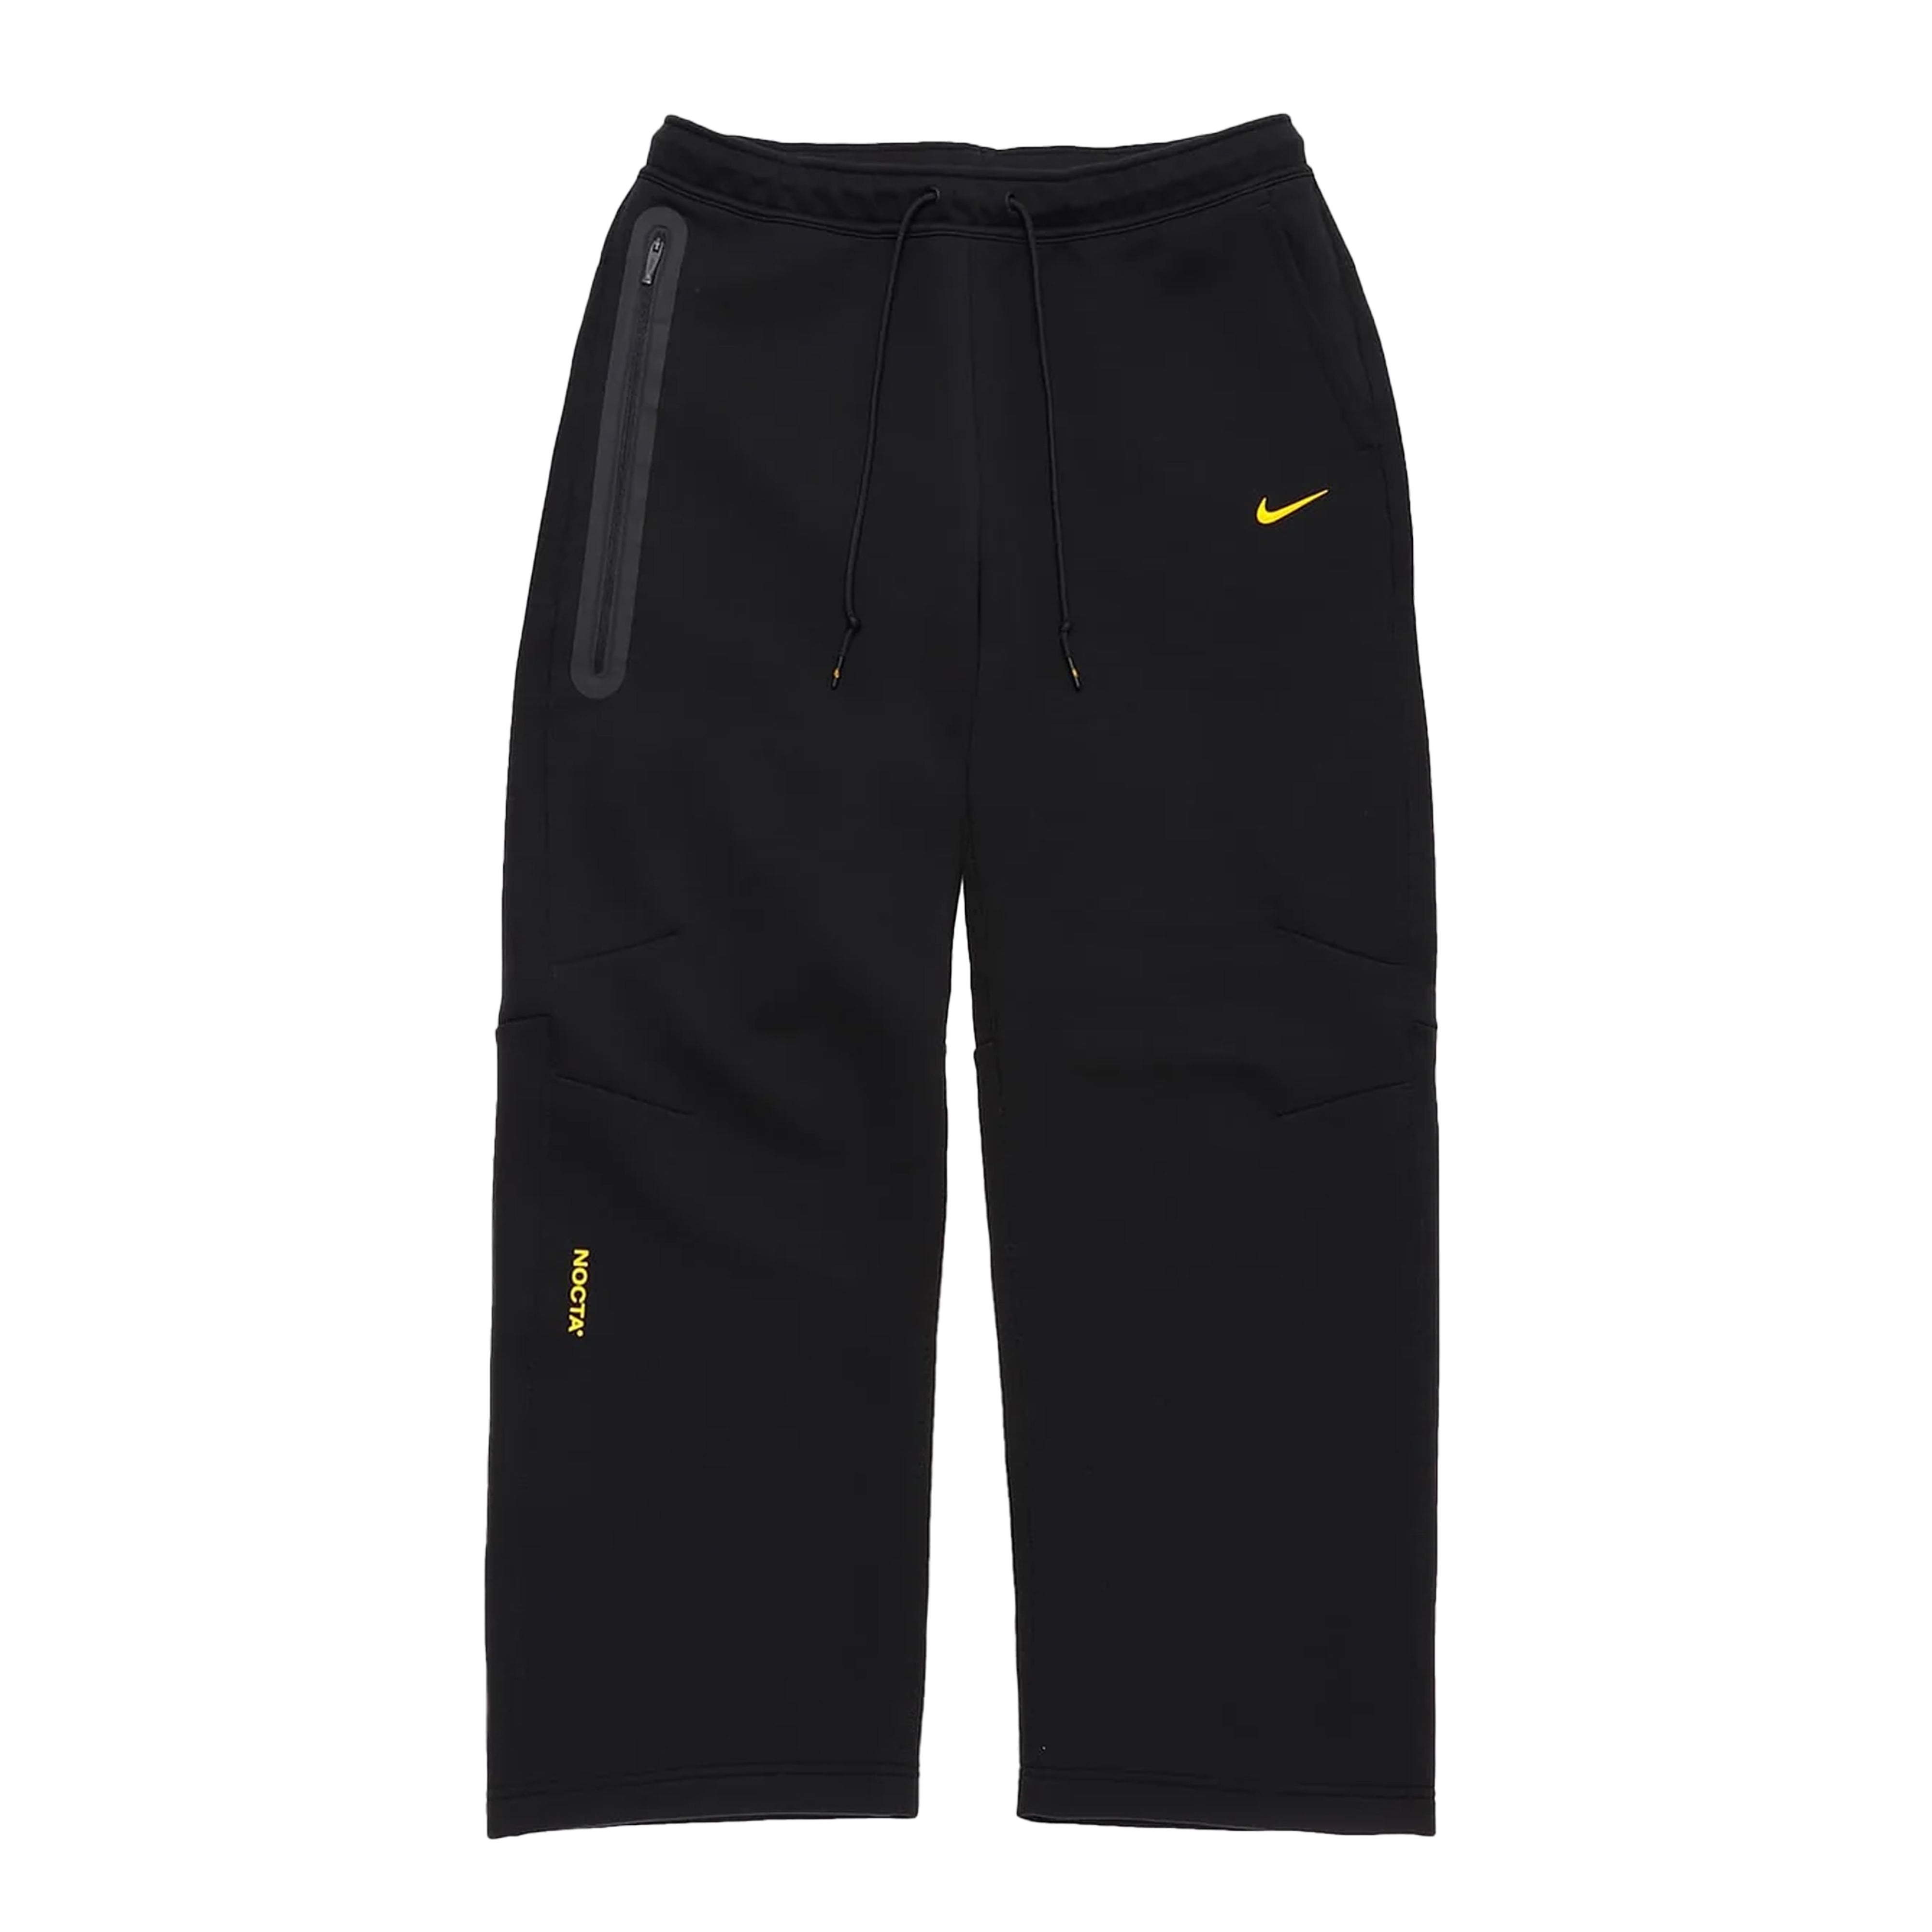 Sサイズ NOCTA x Nike Track Pants Black 新品